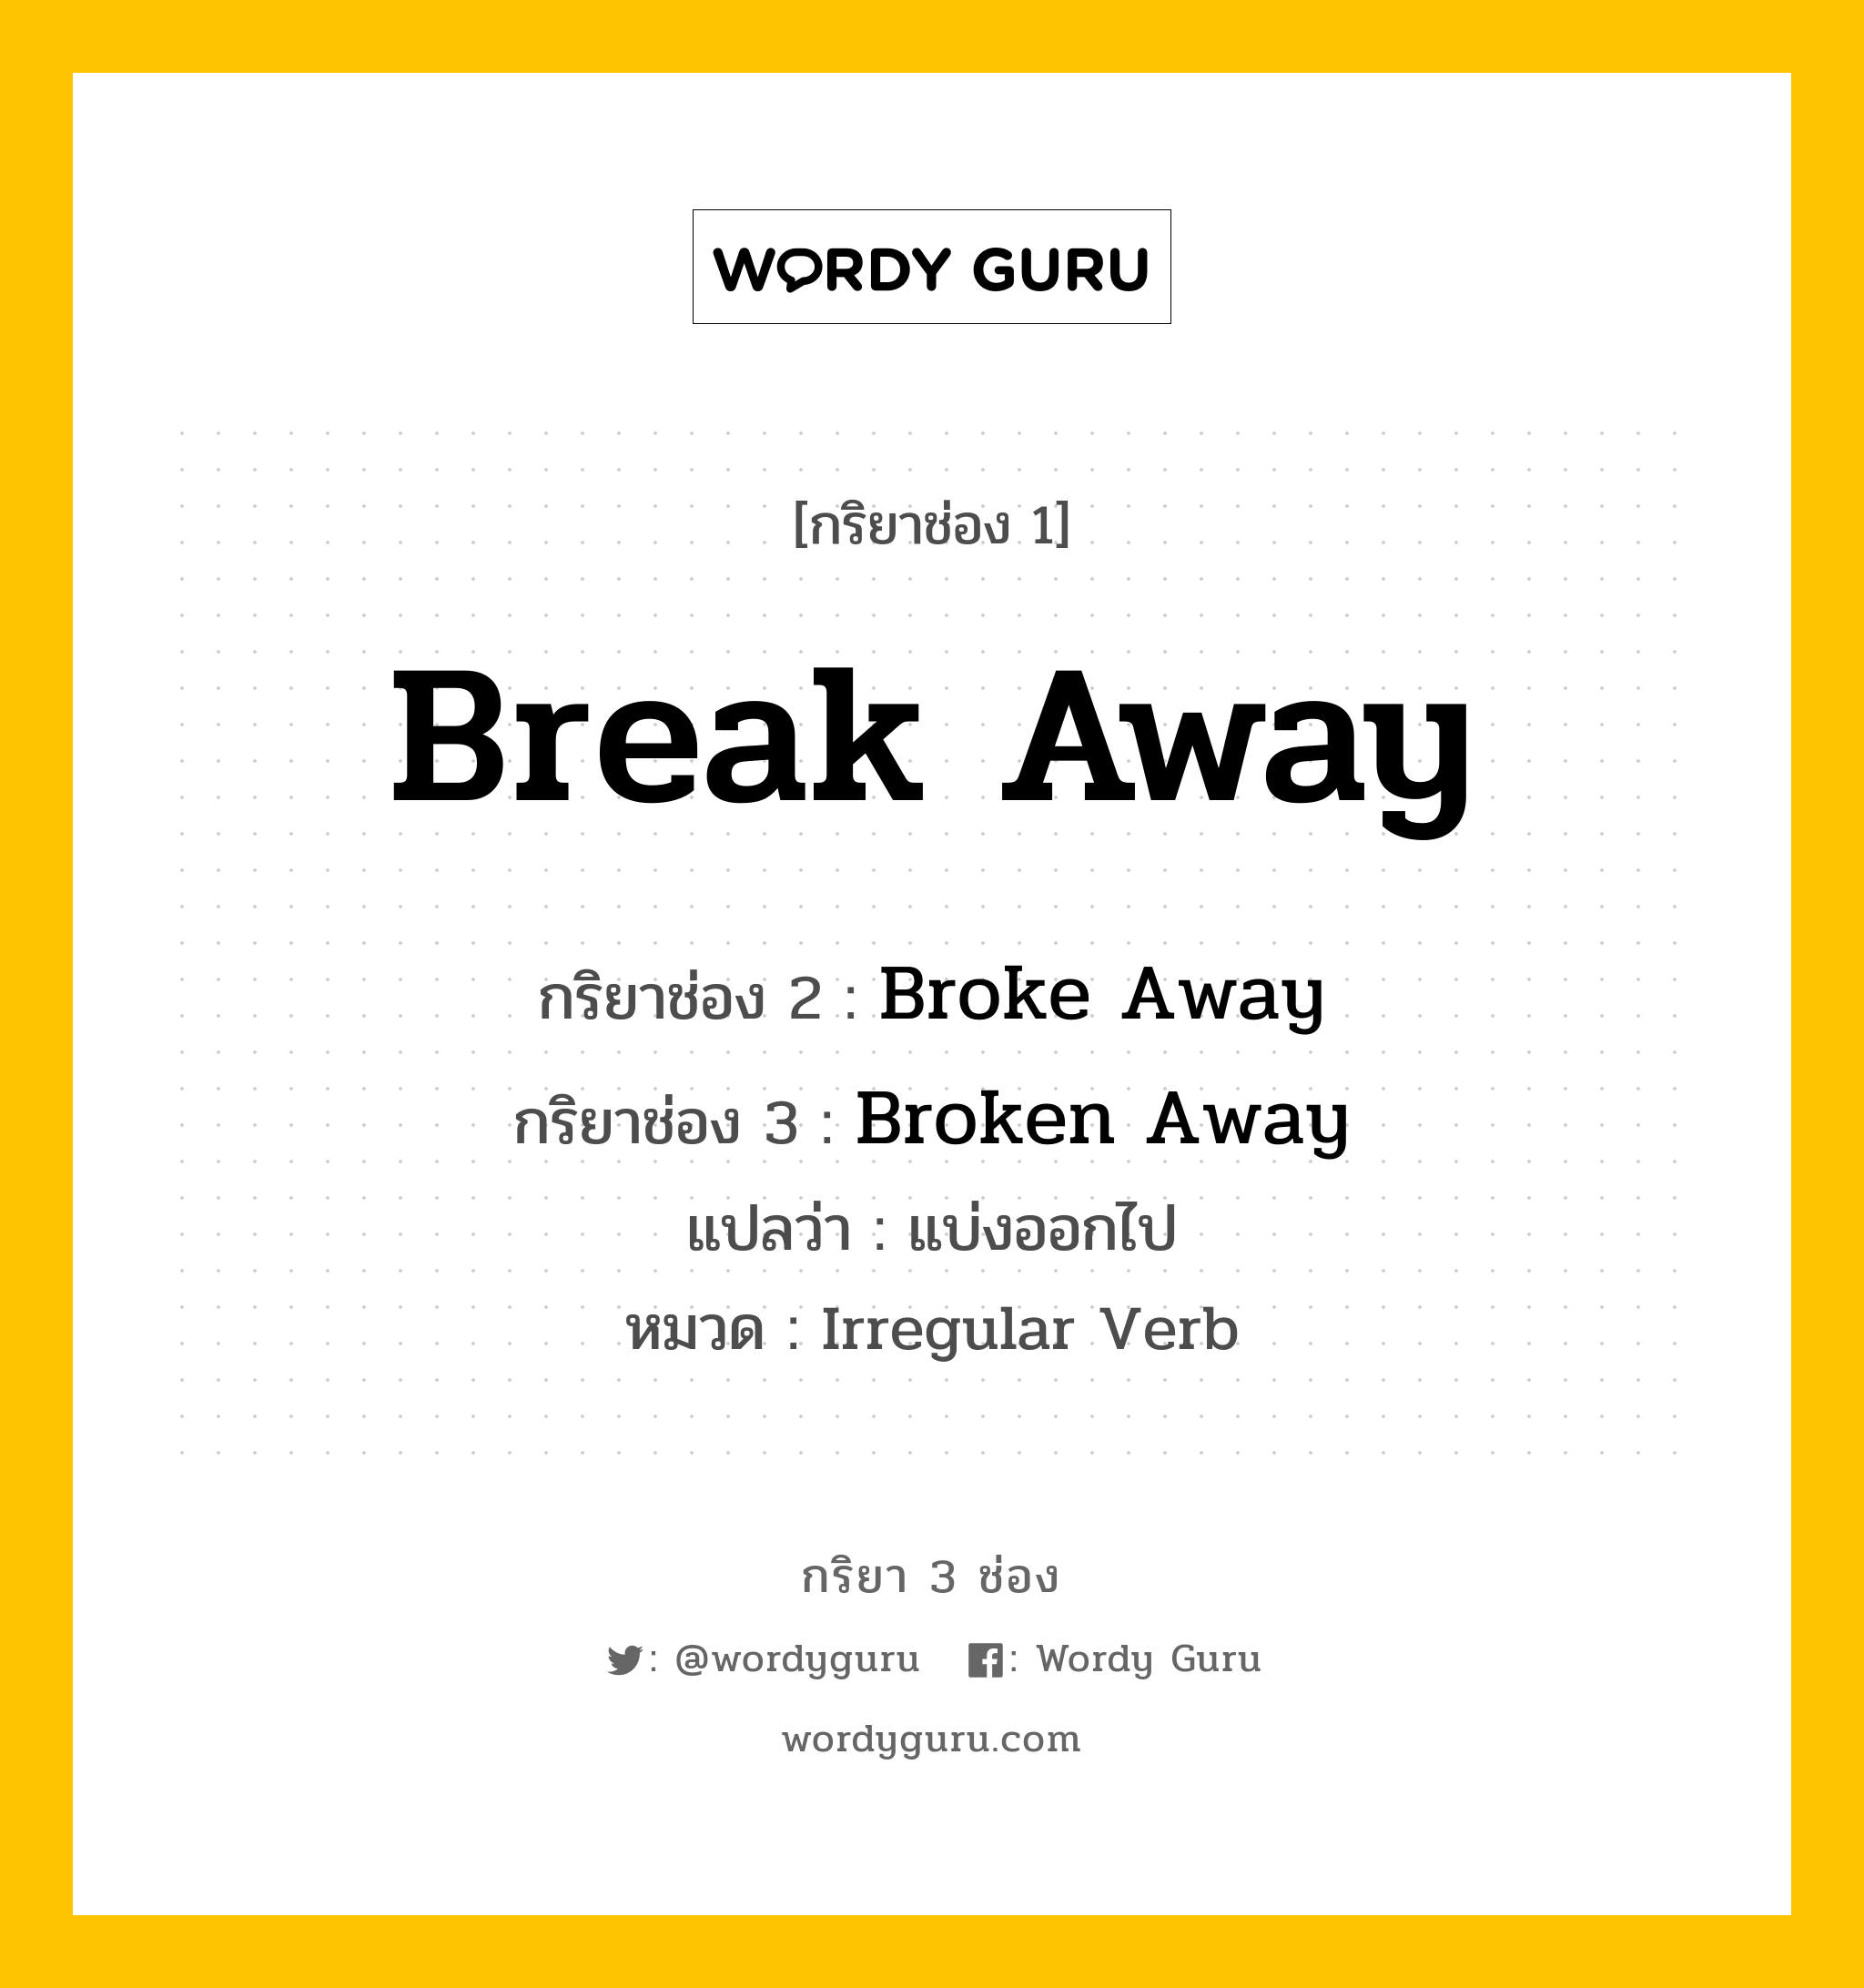 Break Away มีกริยา 3 ช่องอะไรบ้าง? คำศัพท์ในกลุ่มประเภท Irregular Verb, กริยาช่อง 1 Break Away กริยาช่อง 2 Broke Away กริยาช่อง 3 Broken Away แปลว่า แบ่งออกไป หมวด Irregular Verb หมวด Irregular Verb